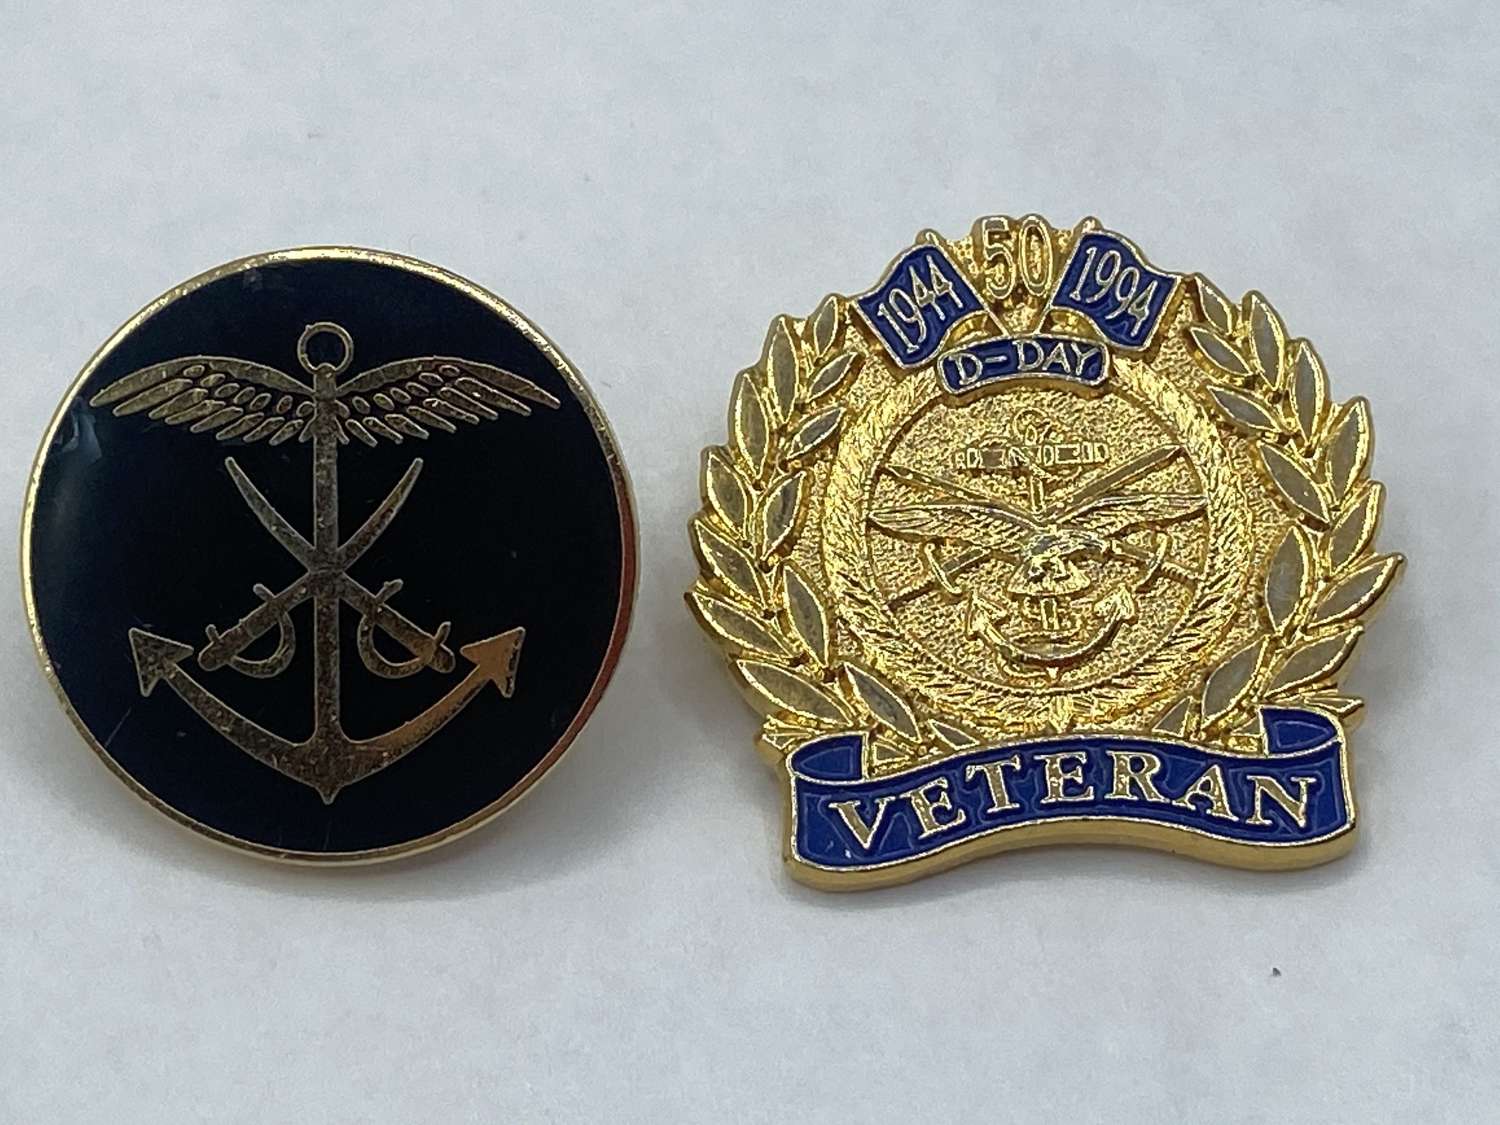 1944-1994, 50 Years D-Day Veterans Enamel & Gilt Badge